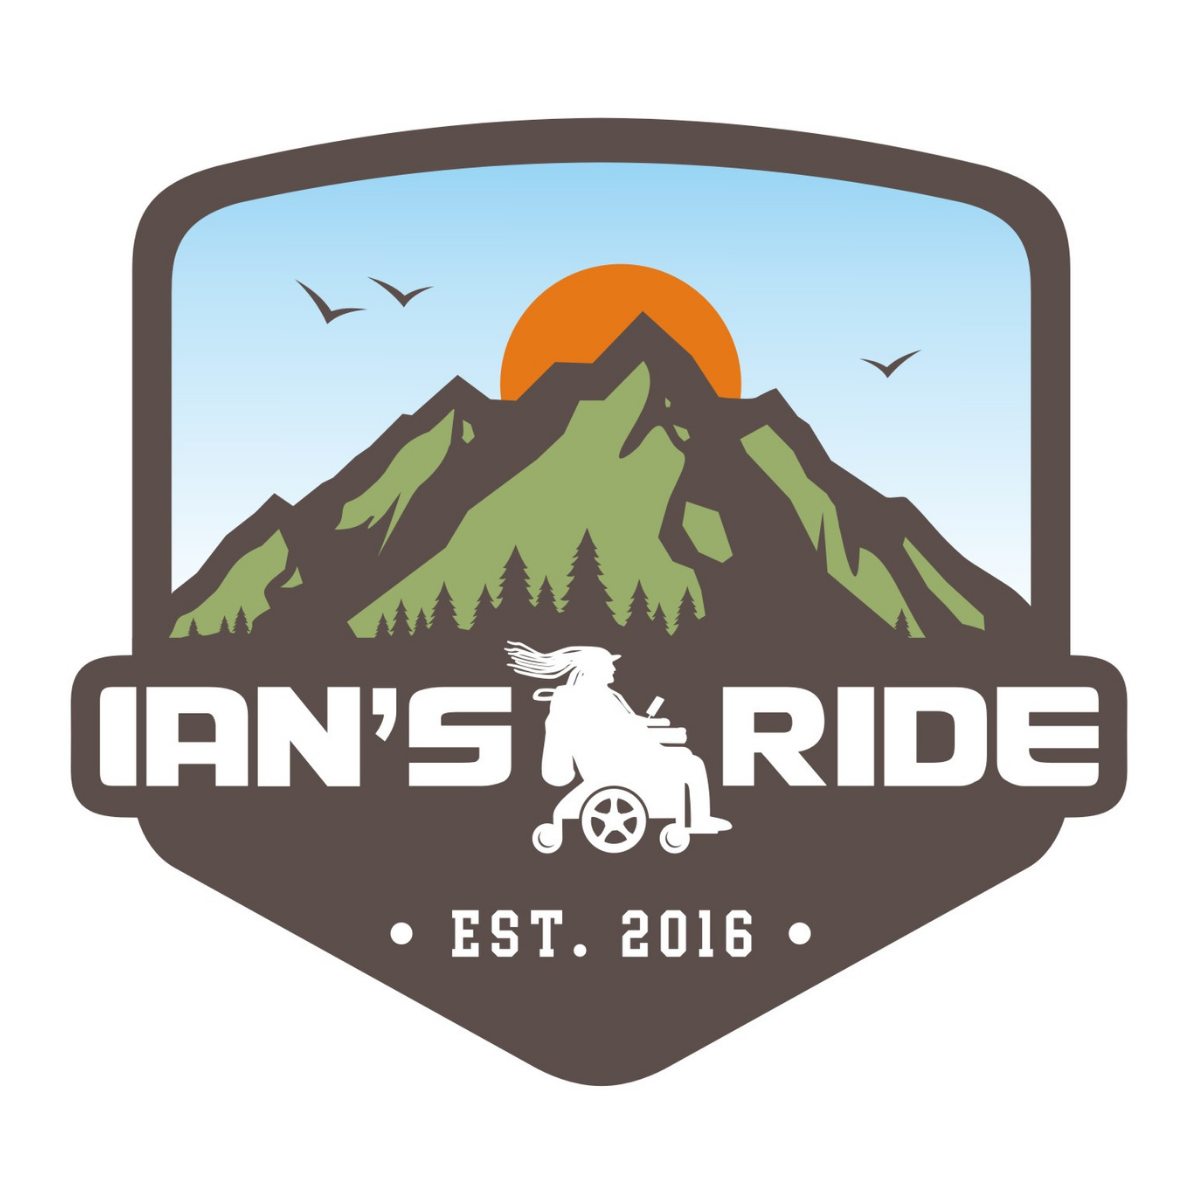 ian's ride logo